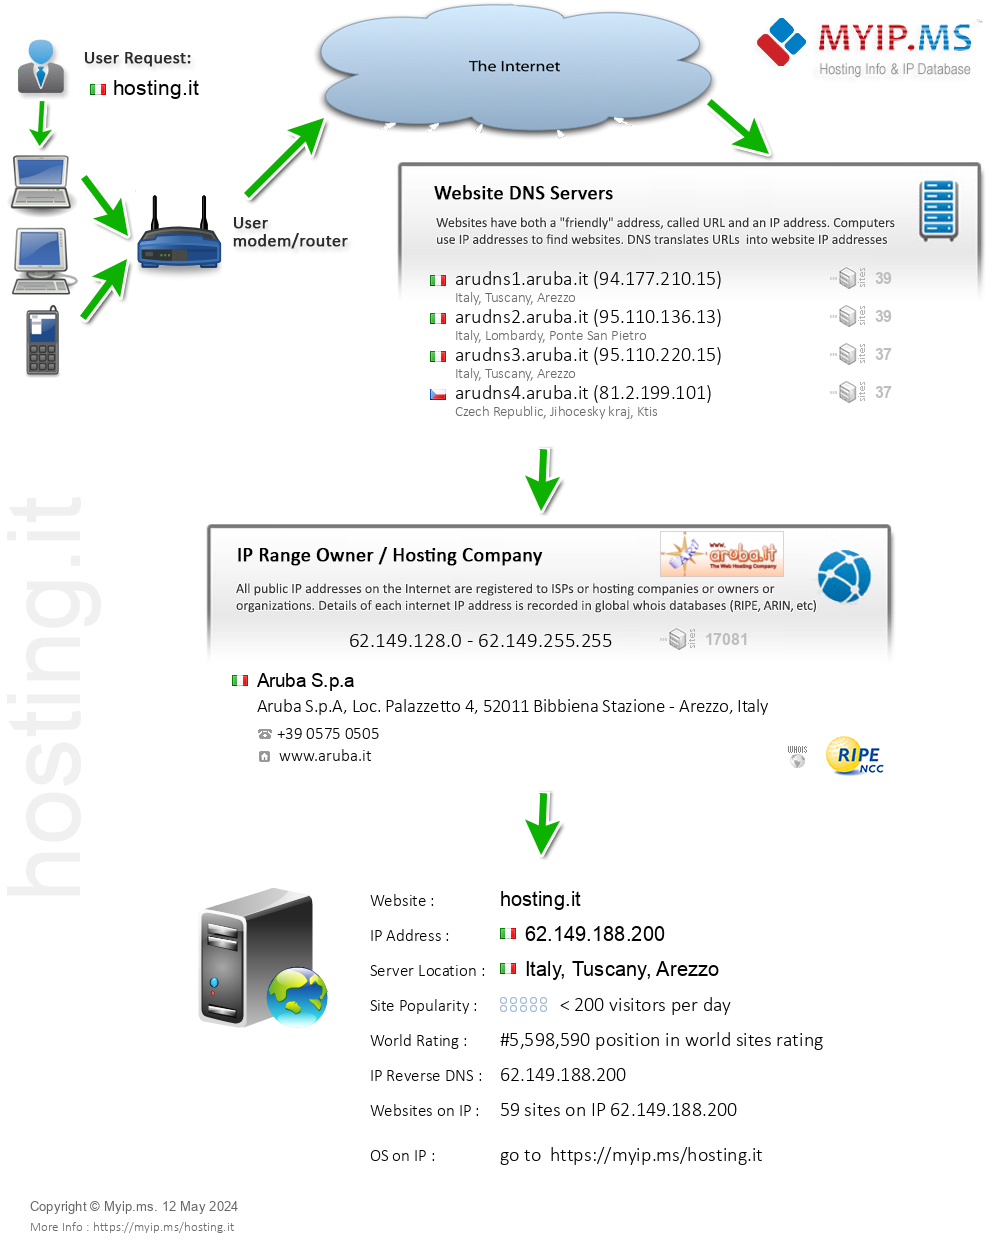 Hosting.it - Website Hosting Visual IP Diagram